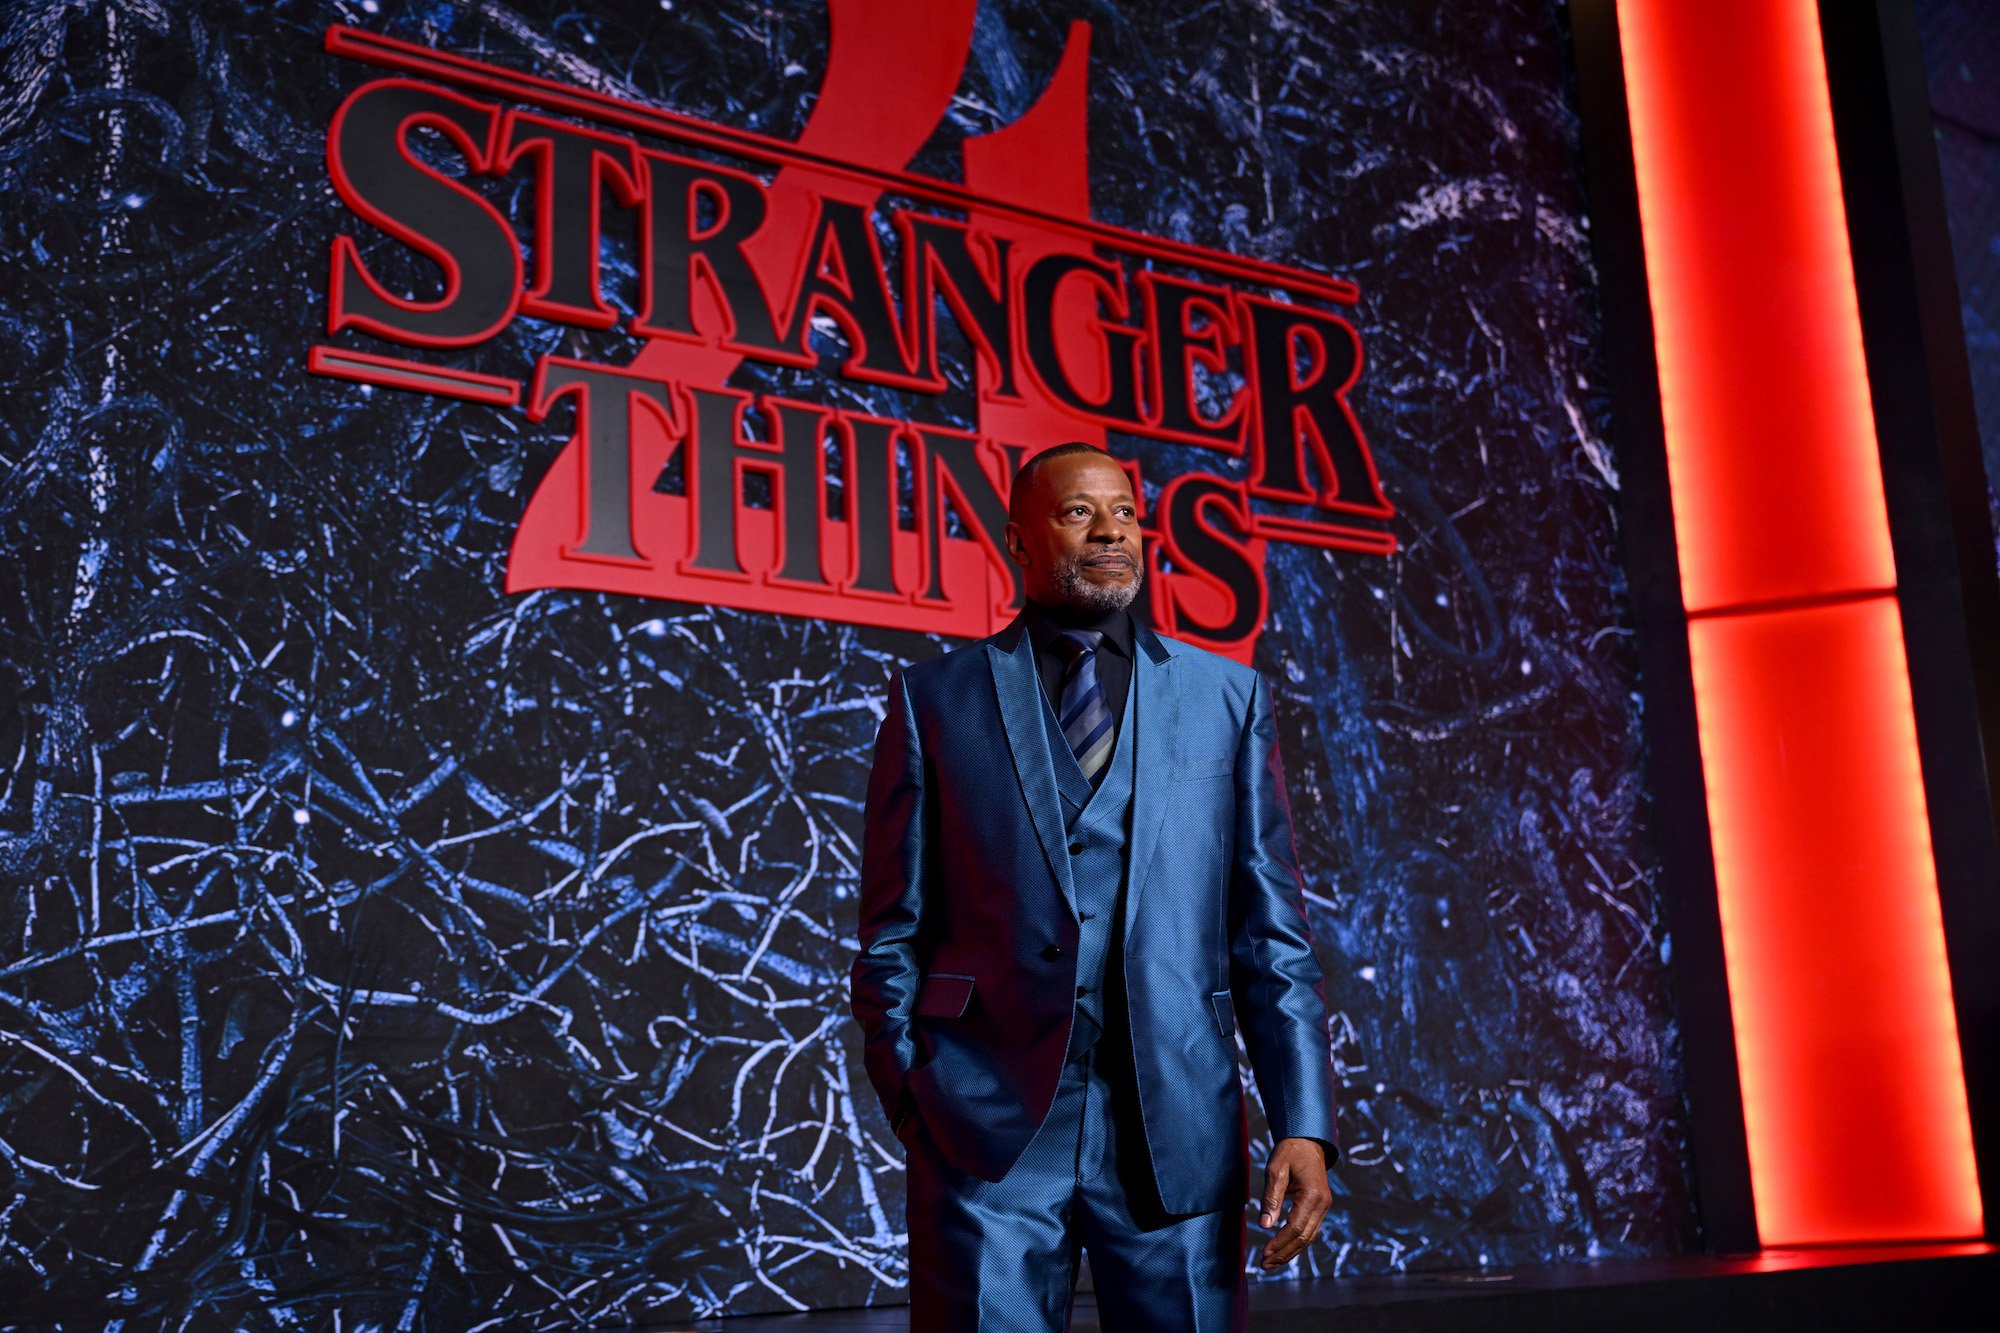 Stranger Things 4: Quantos episódios tem na Parte 2 e qual a duração deles